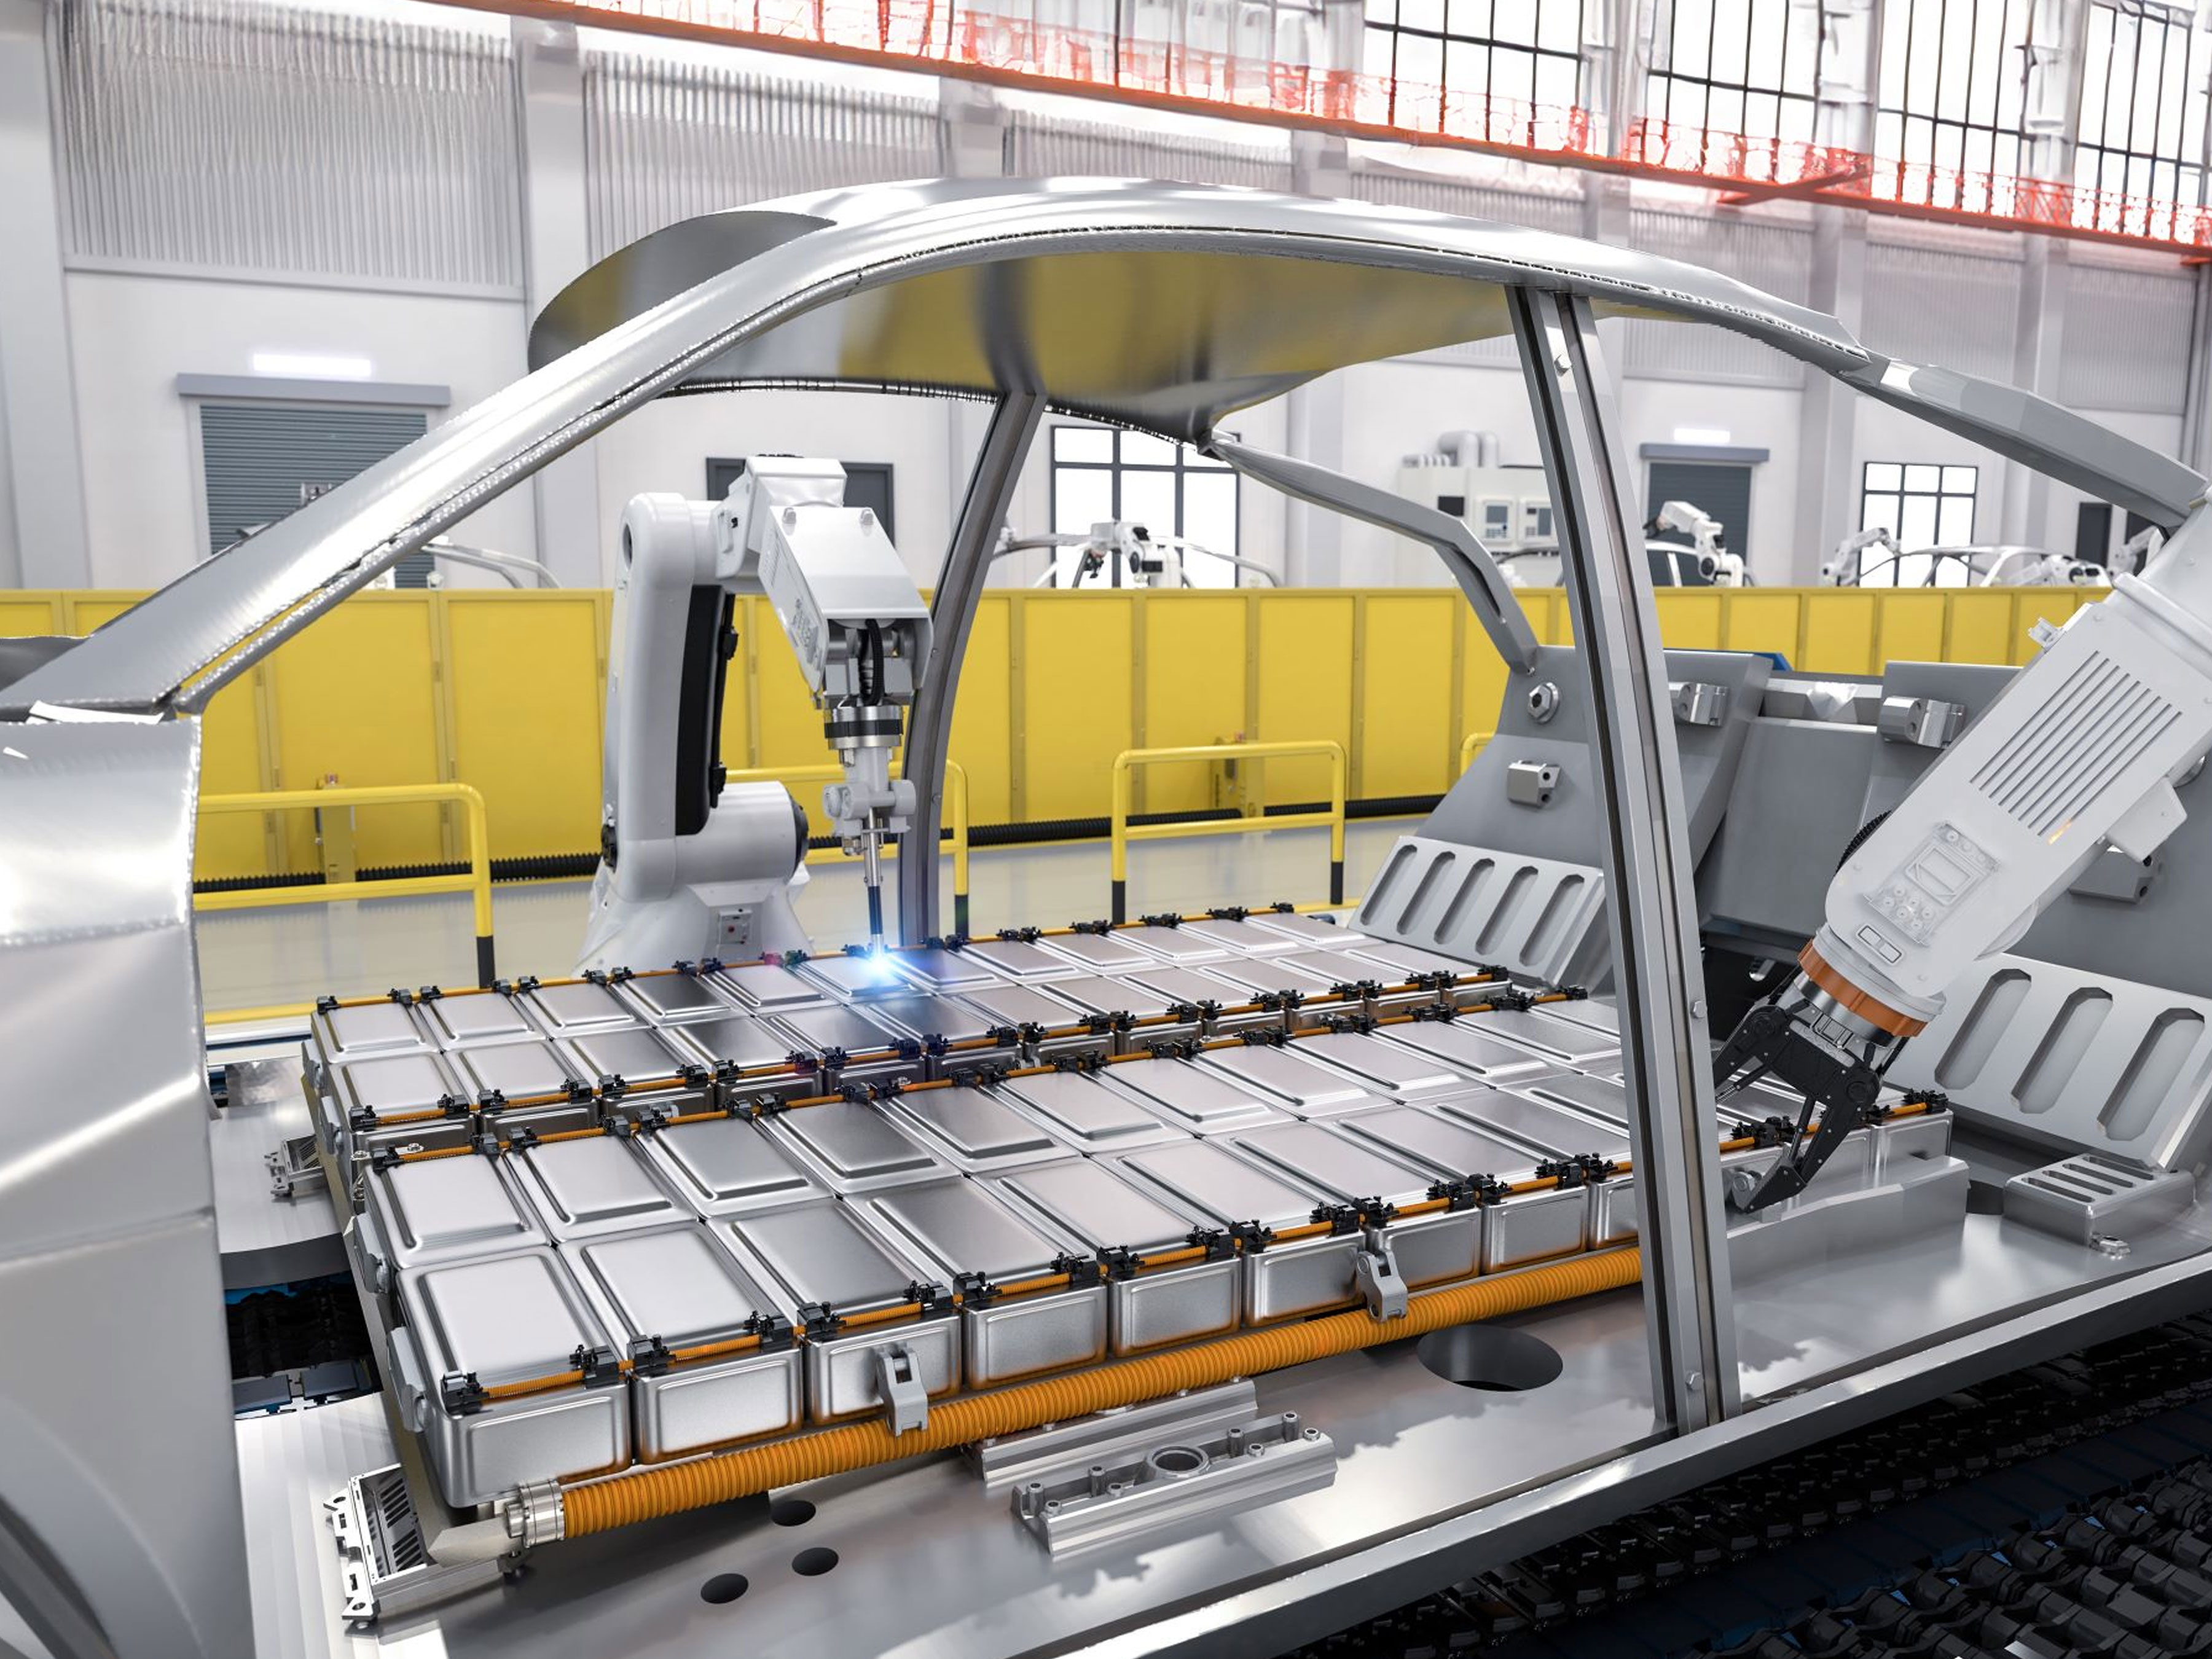 Zebra's Machine Vision during a manufacturing process